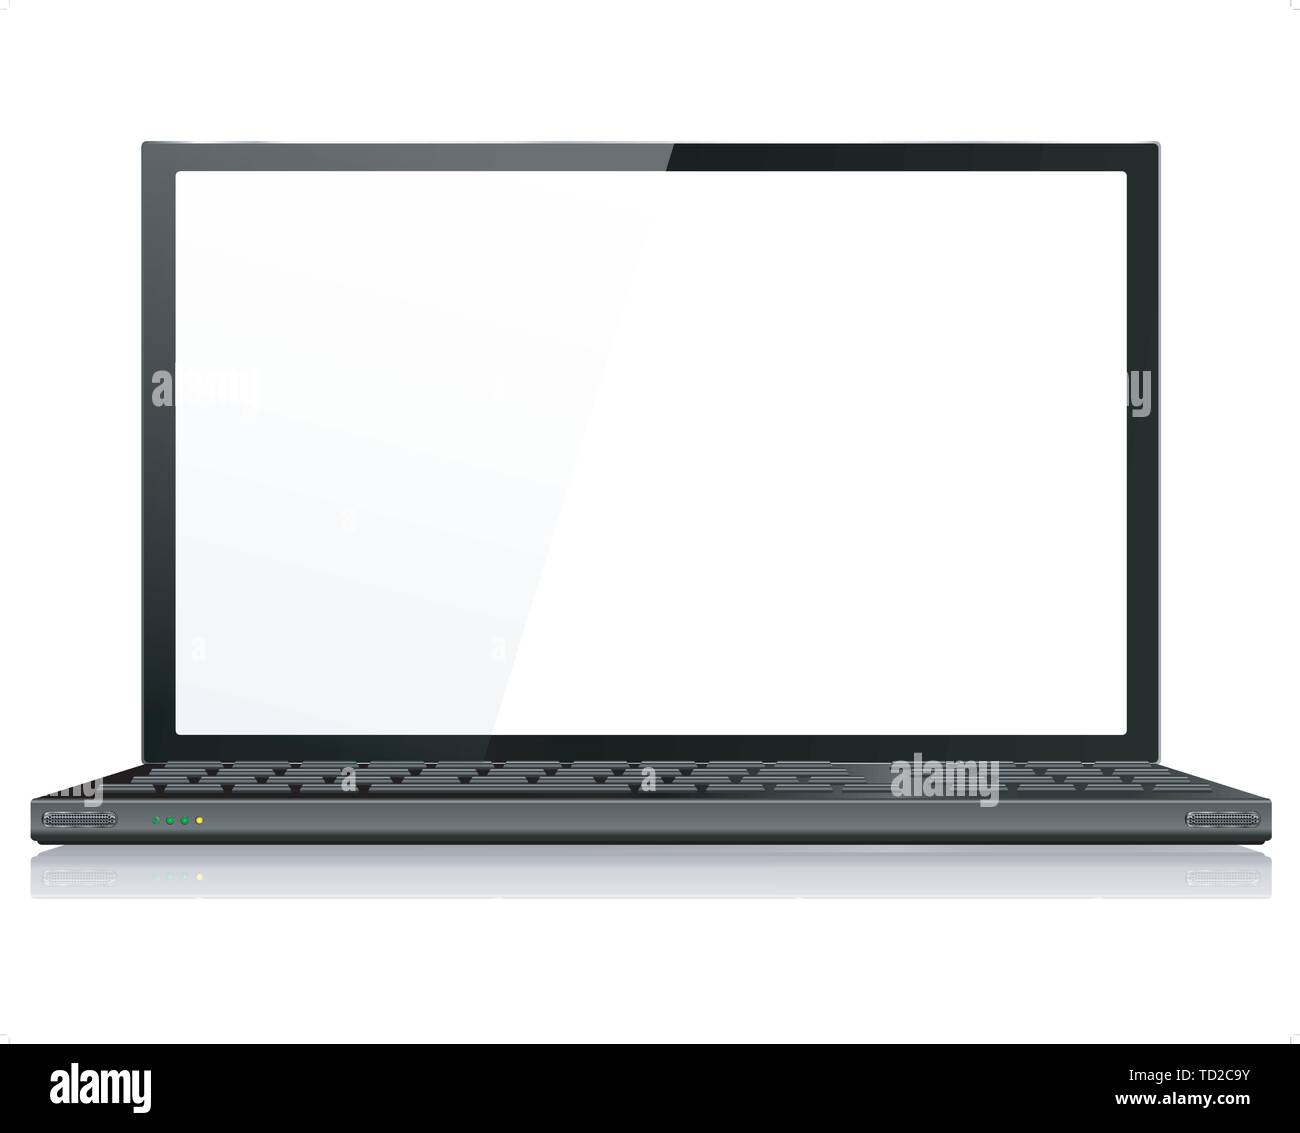 Realistico Computer laptop o notebook in nero - Vettore con elementi raggruppati, denominati strati e con uno strato separato per aggiungere facilmente la propria immagine in giro Illustrazione Vettoriale